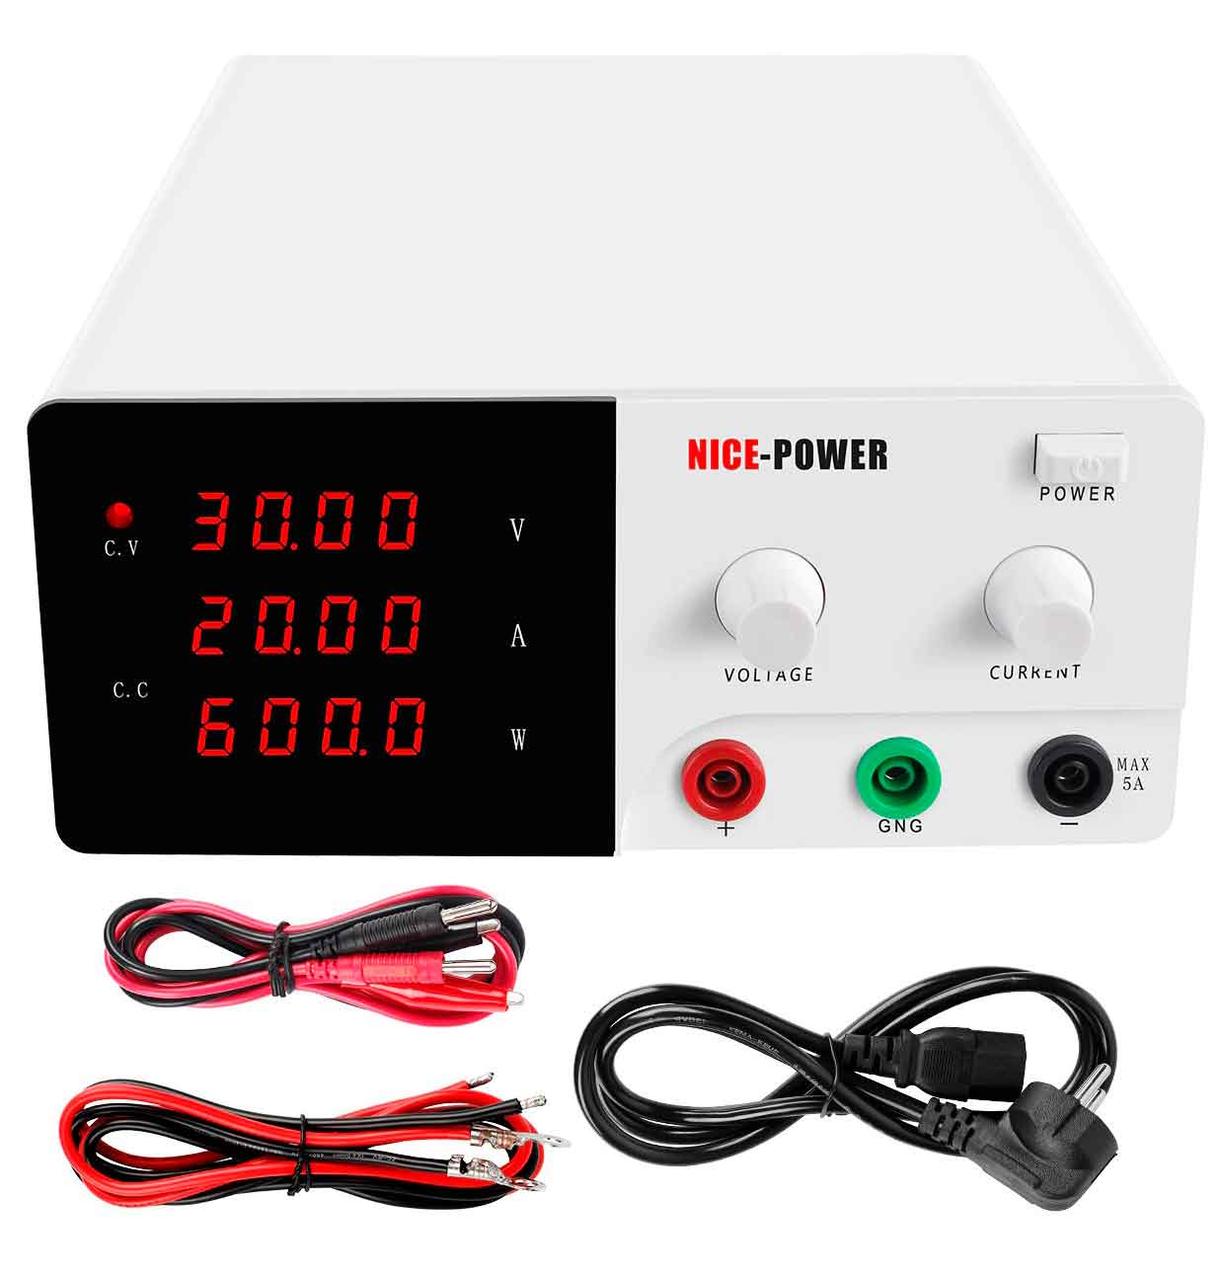 NicePower R-SPS3020 імпульсний лабораторний блок живлення: 0-30В, 0-20А, потужність 600 Вт